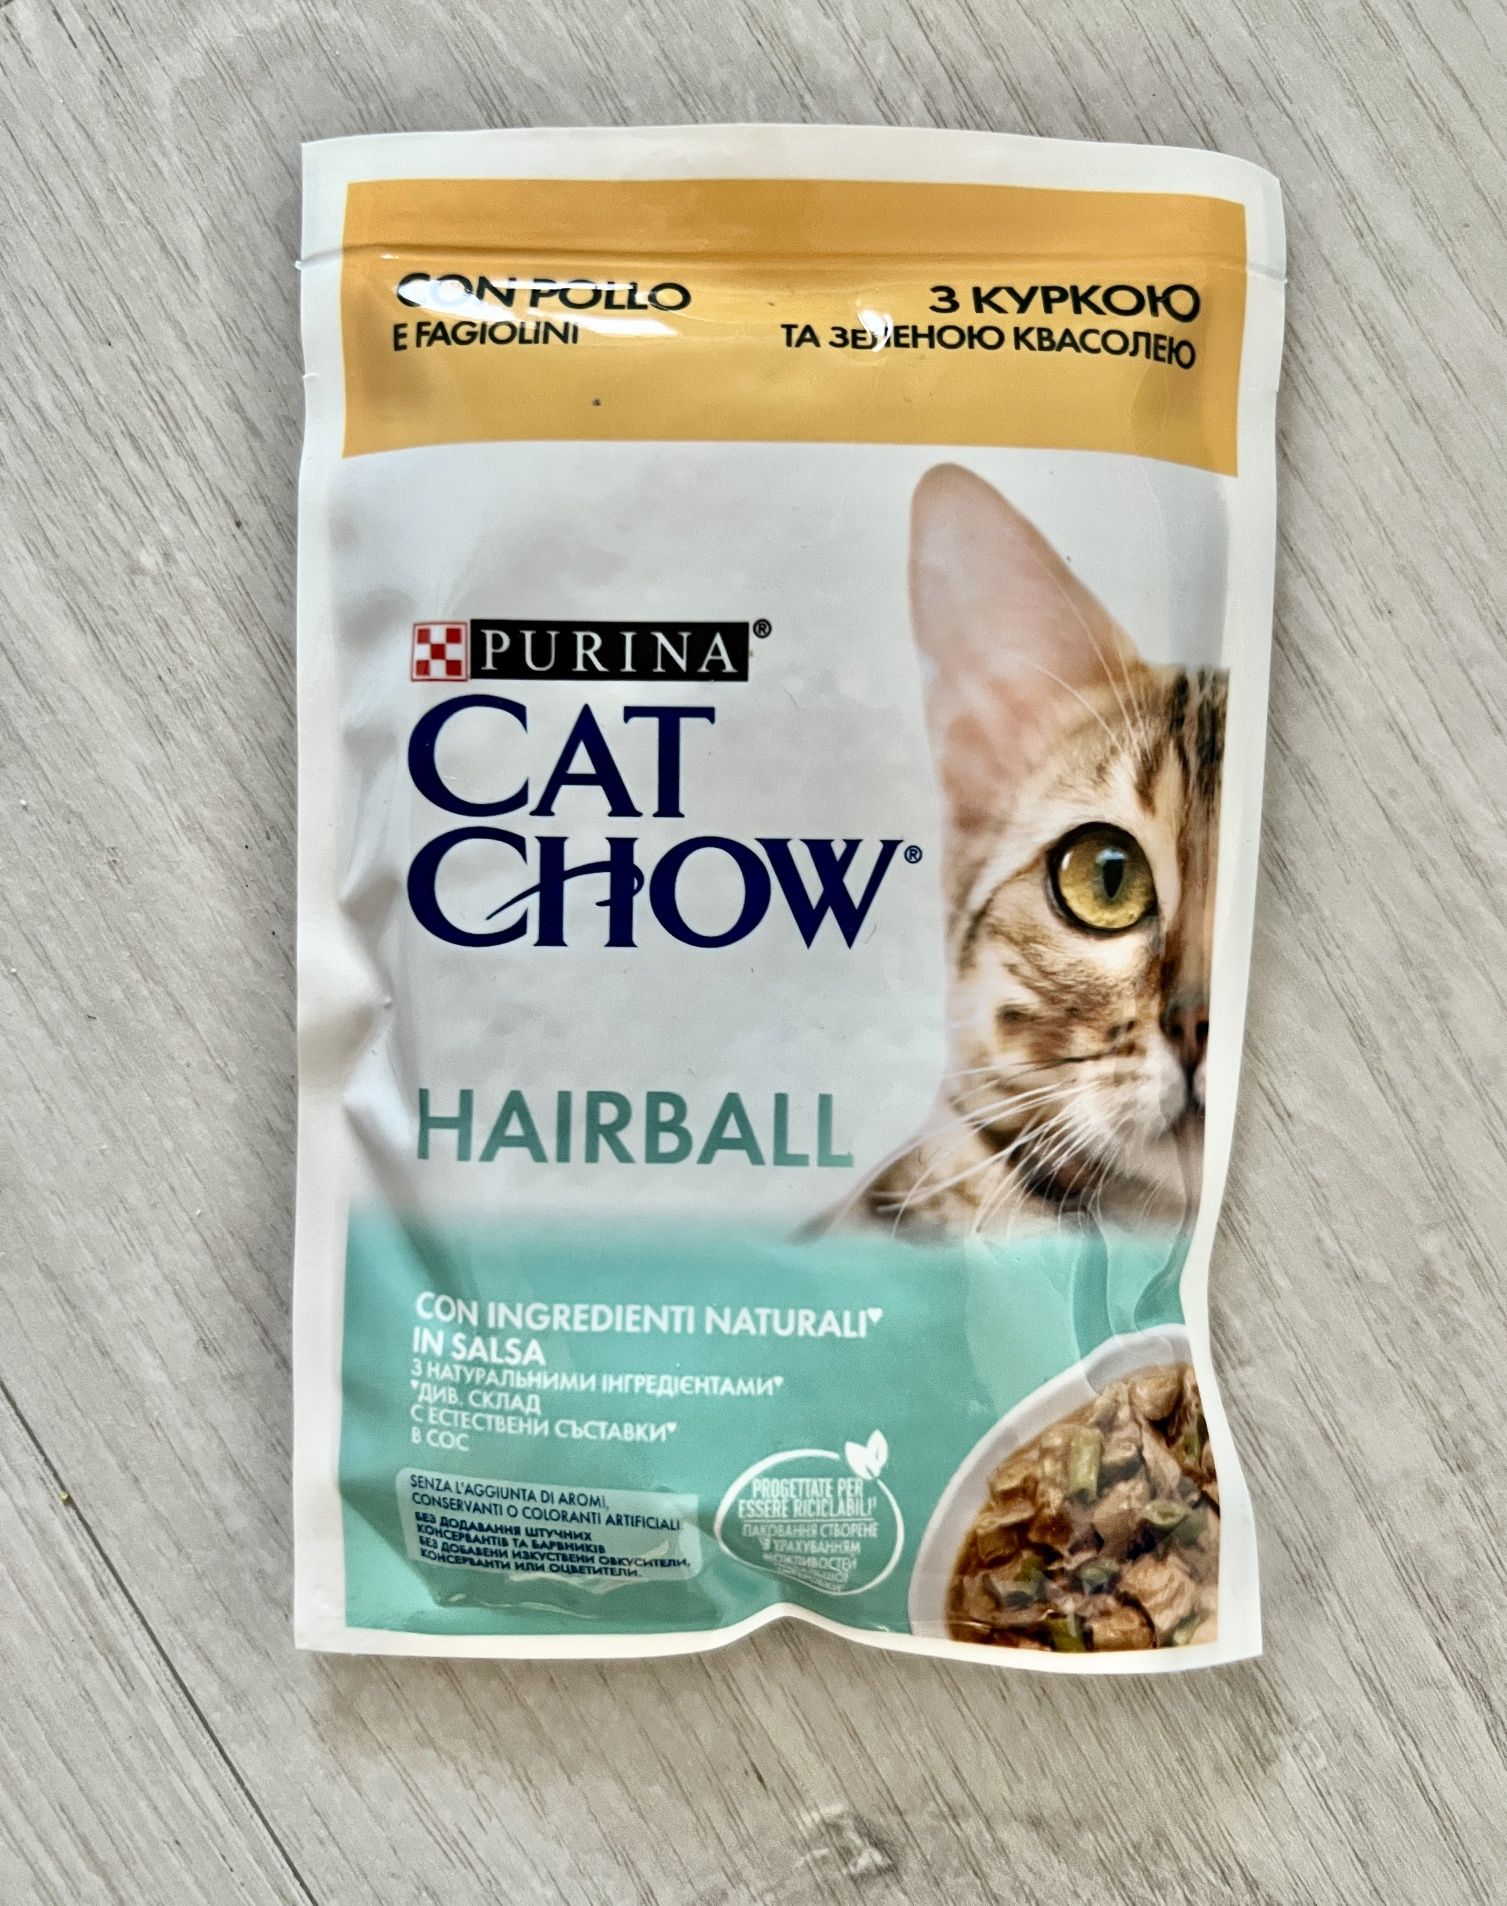 Karma mokra - Purina Cat Chow Hairball kurczak 10 saszetek